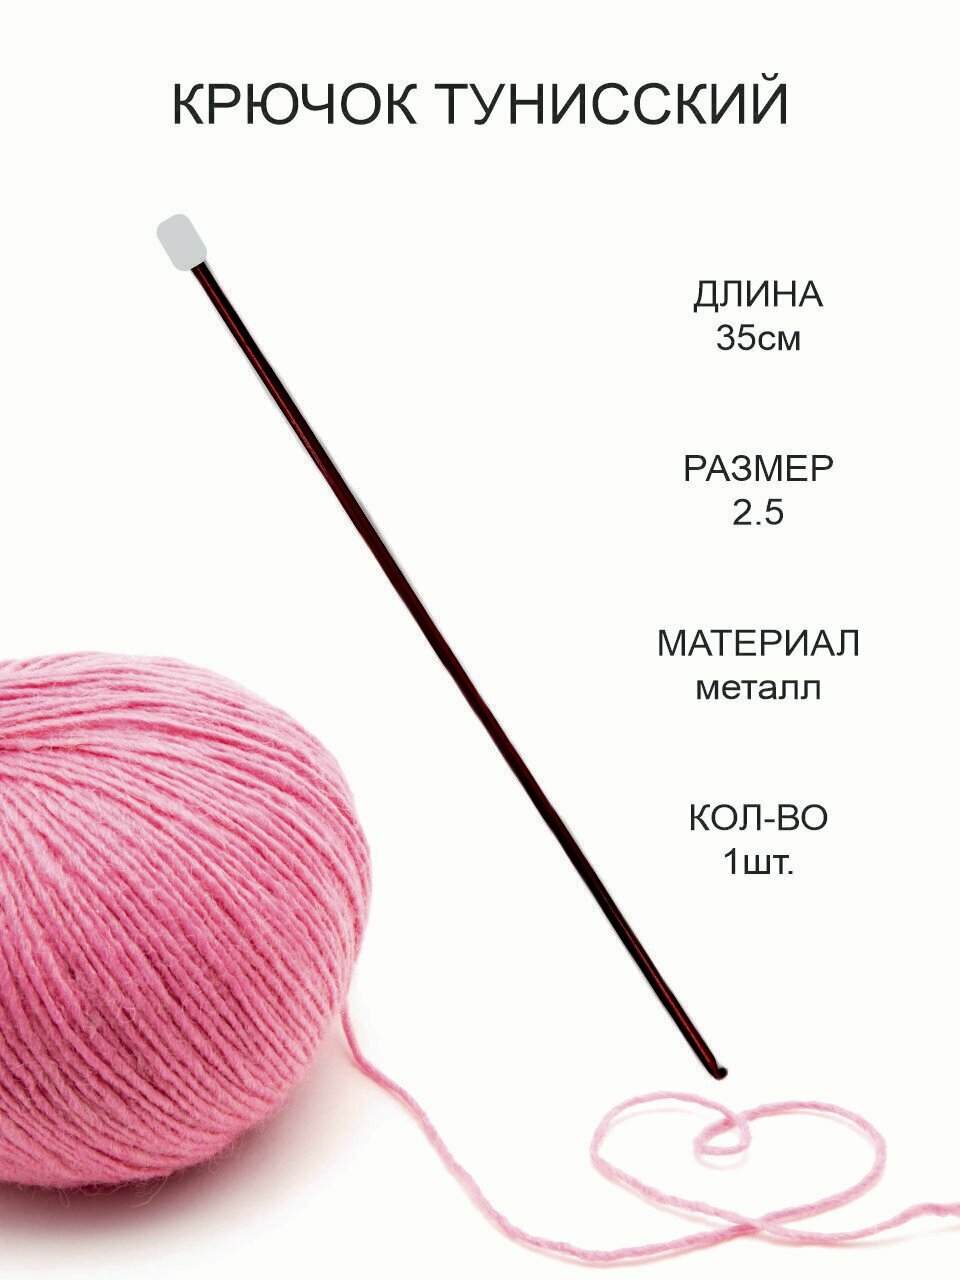 Крючок для тунисского вязания, металл, диаметр 2.5 мм, длина 35 см / Крючок для вязания Афганский с тефлоновым покрытием